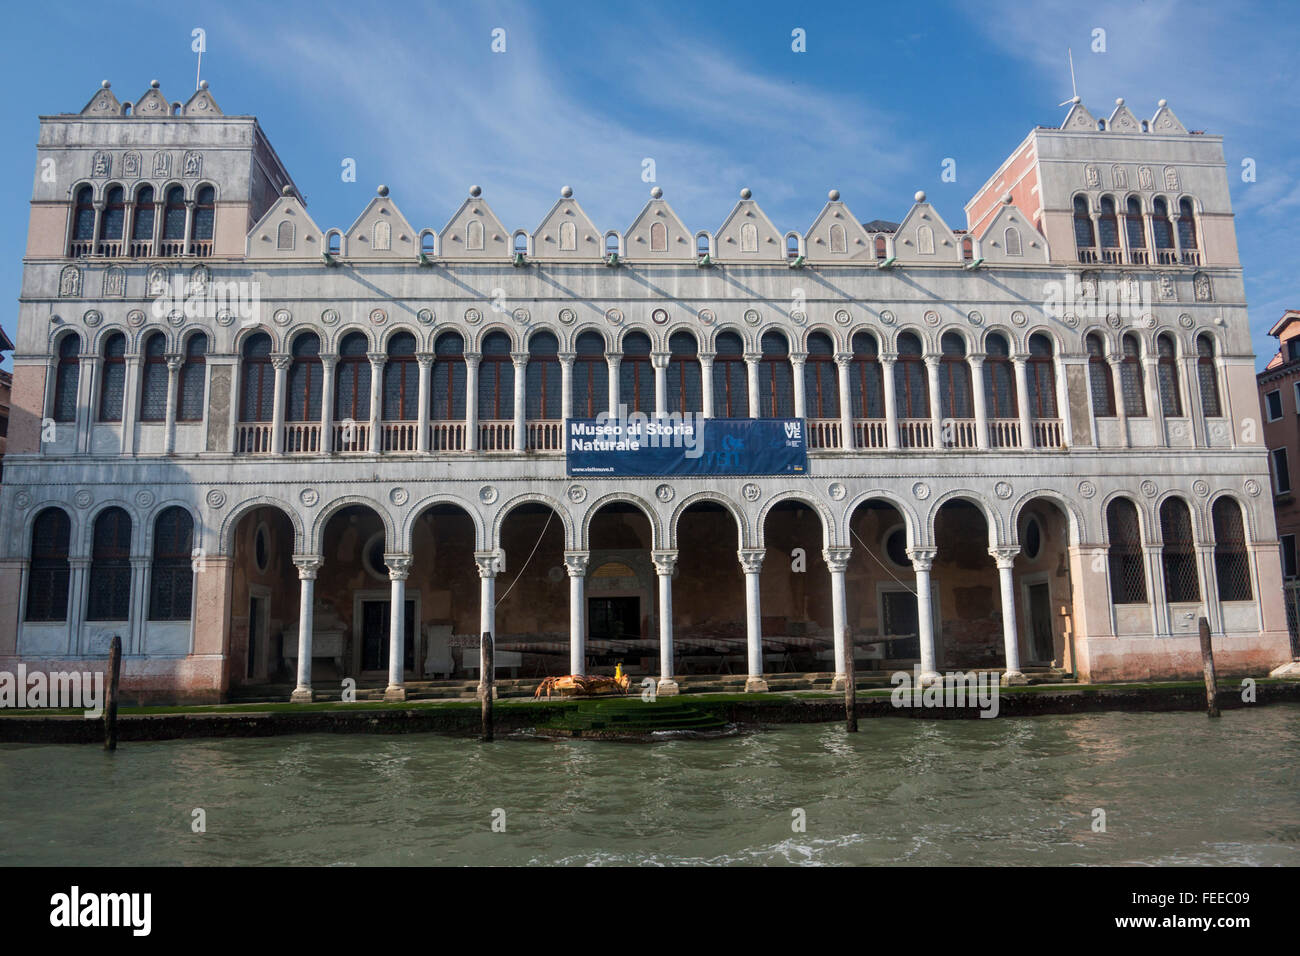 Fondaco dei Turchi Museo di Storia Naturale palazzo on Grand canal Venice Veneto Italy Stock Photo